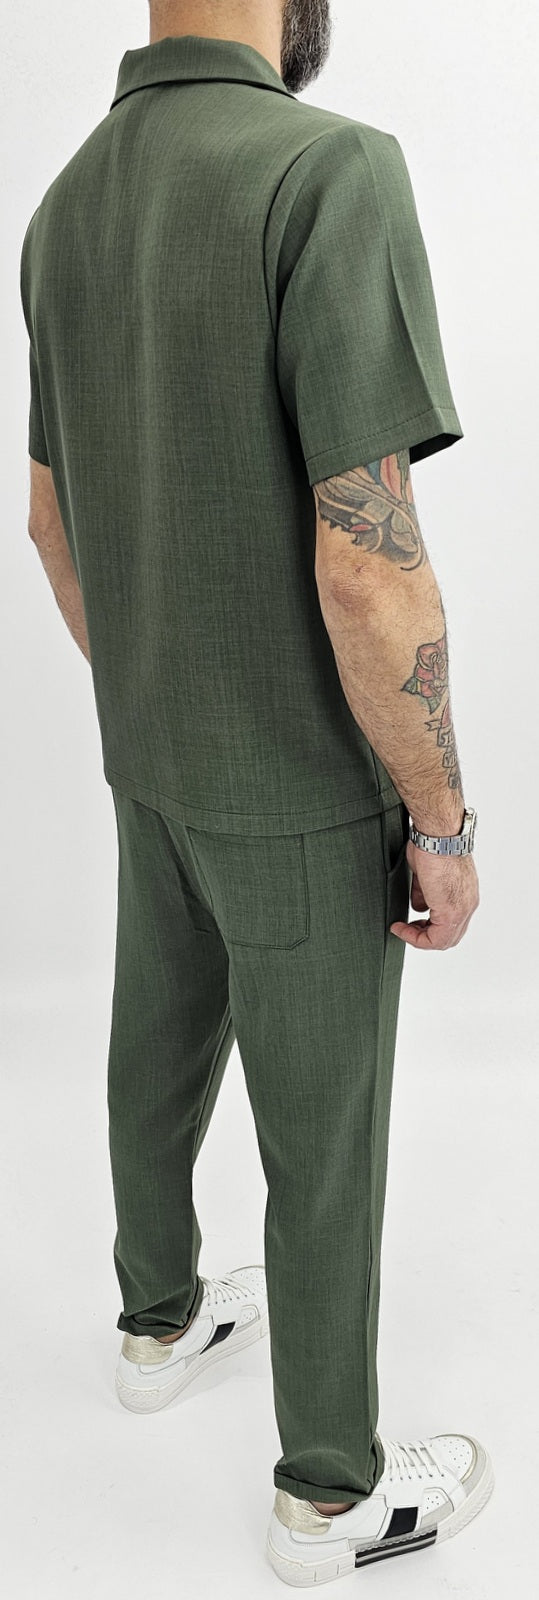 Completo uomo made in italy camicia+pantalone over size s,m,l,xl,xxl